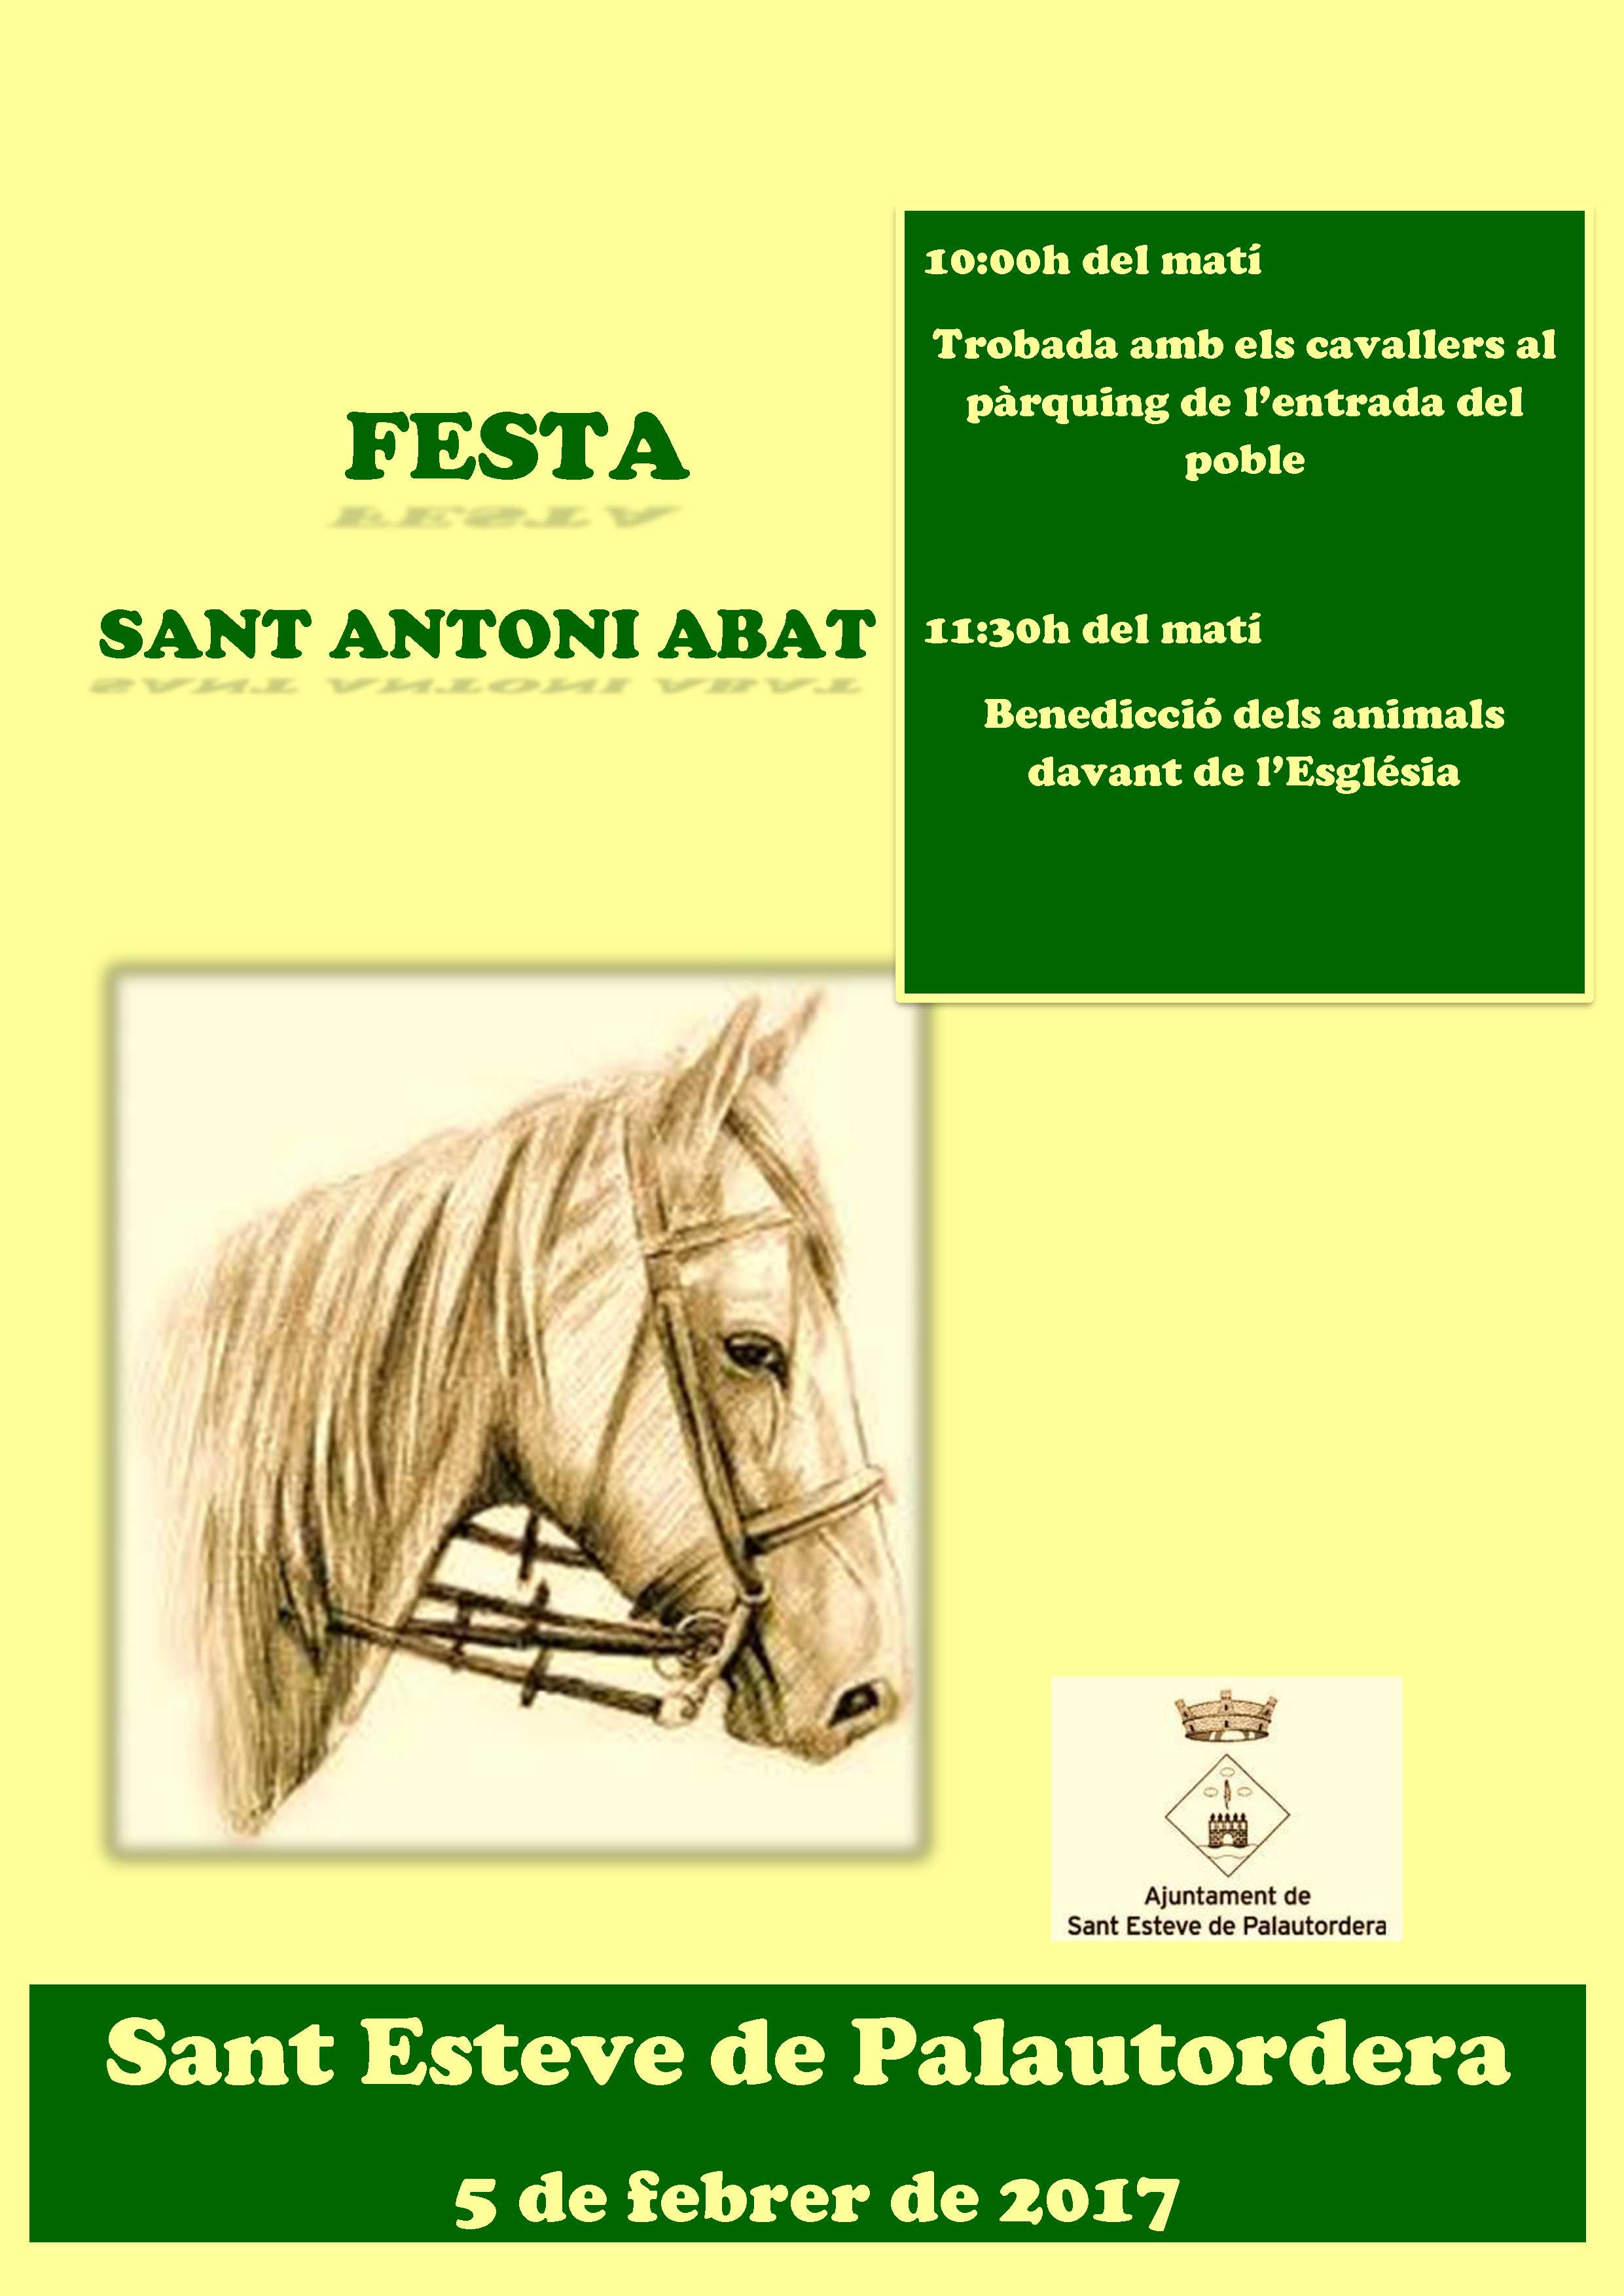 Sant Antoni Abat, el 5 de febrer a Palautordera